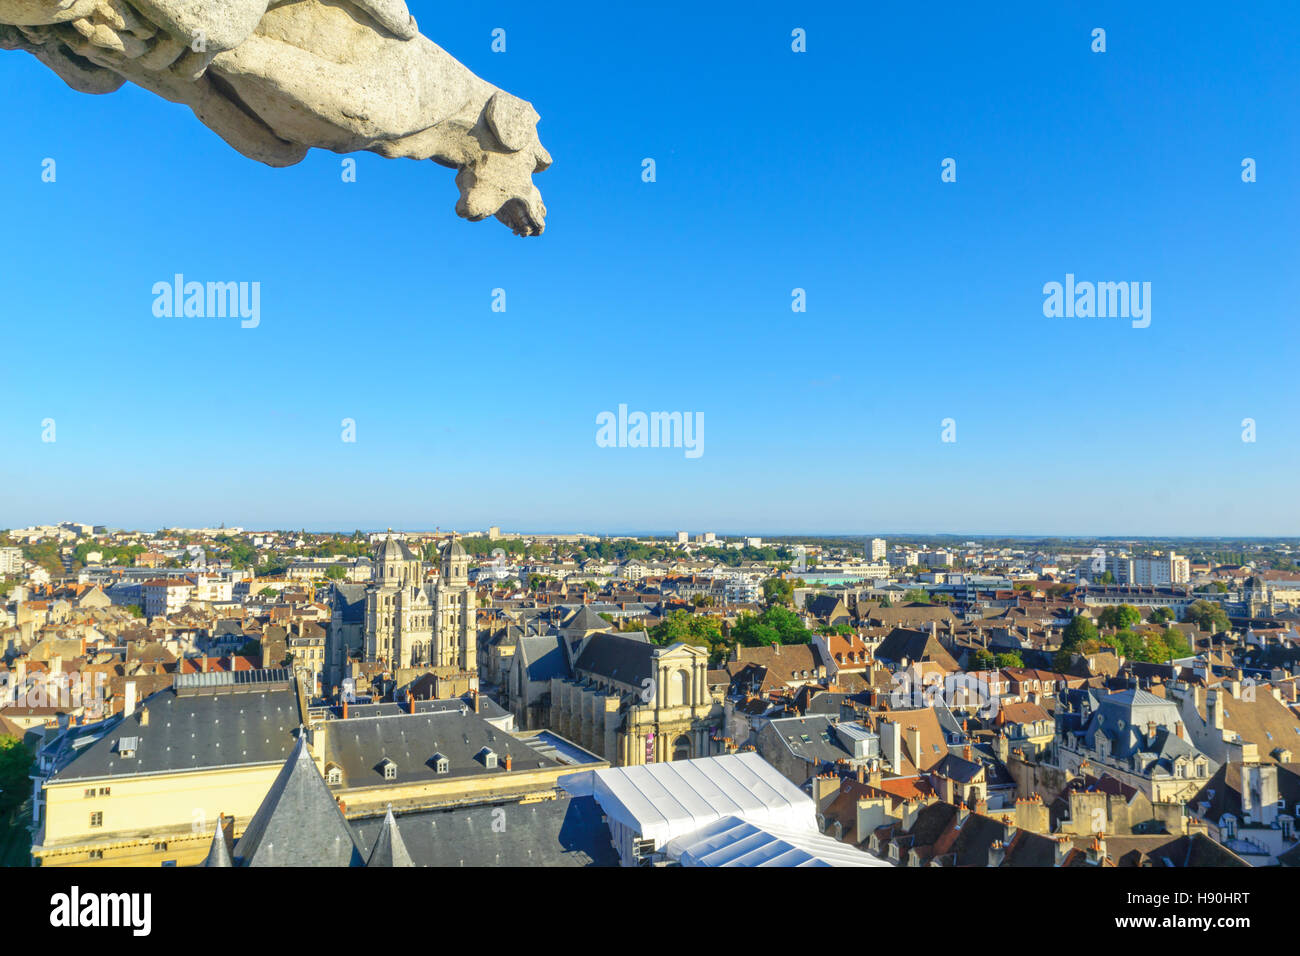 DIJON, FRANCE - 15 octobre 2016 : Une vue aérienne du centre historique de la ville, avec une gargouille et l'église Saint-Michel, à Dijon, Bourgogne, Fr Banque D'Images